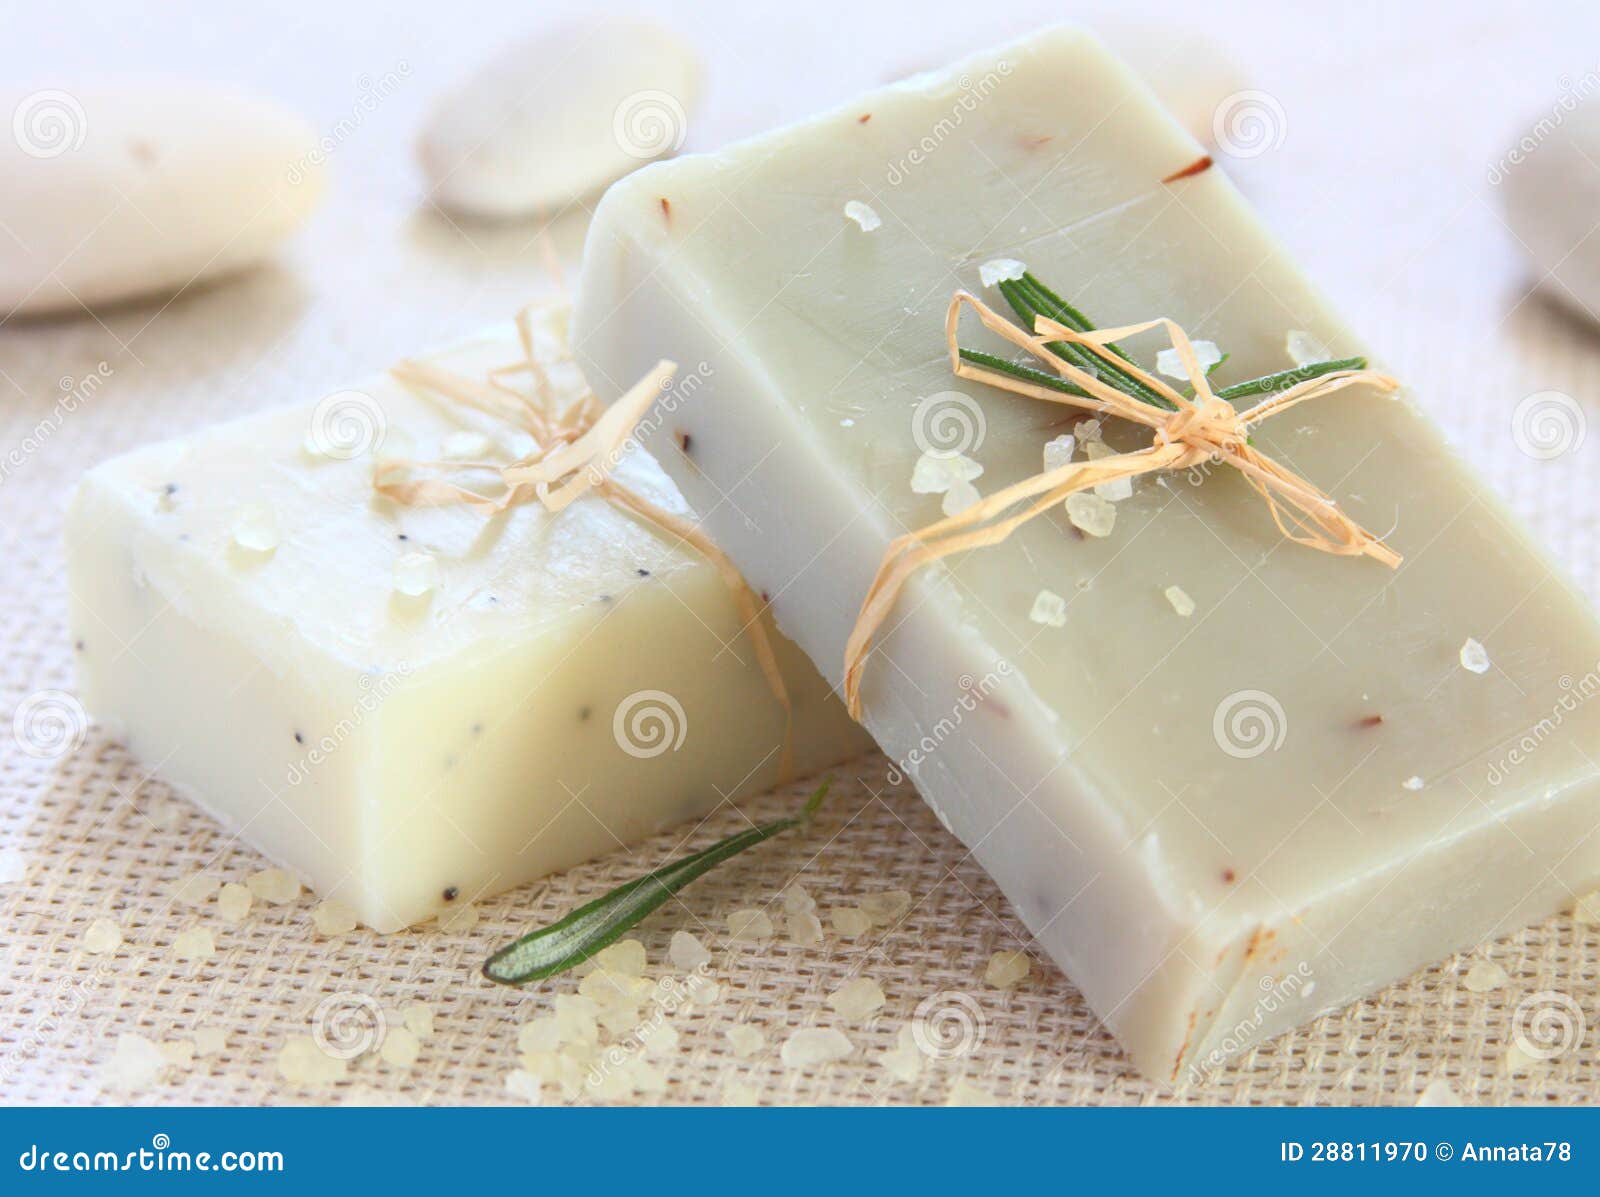 natural handmade soap.spa